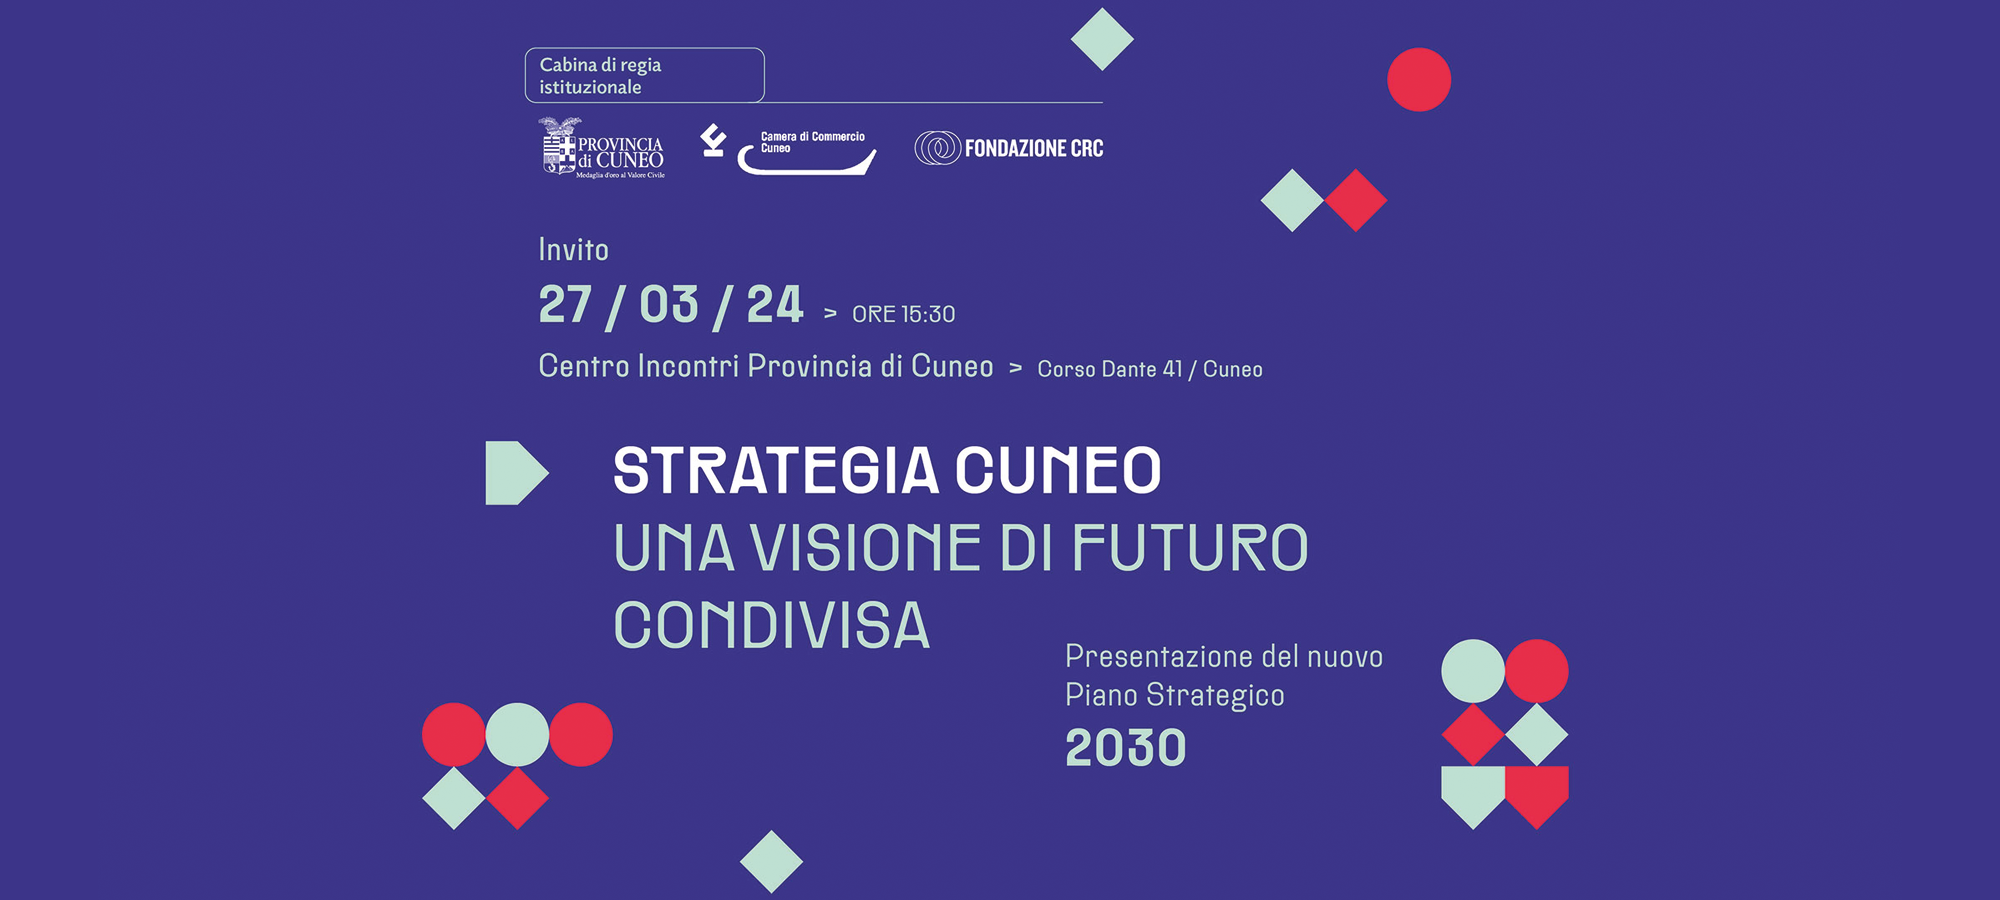 Strategia Cuneo: una visione di futuro condivisa